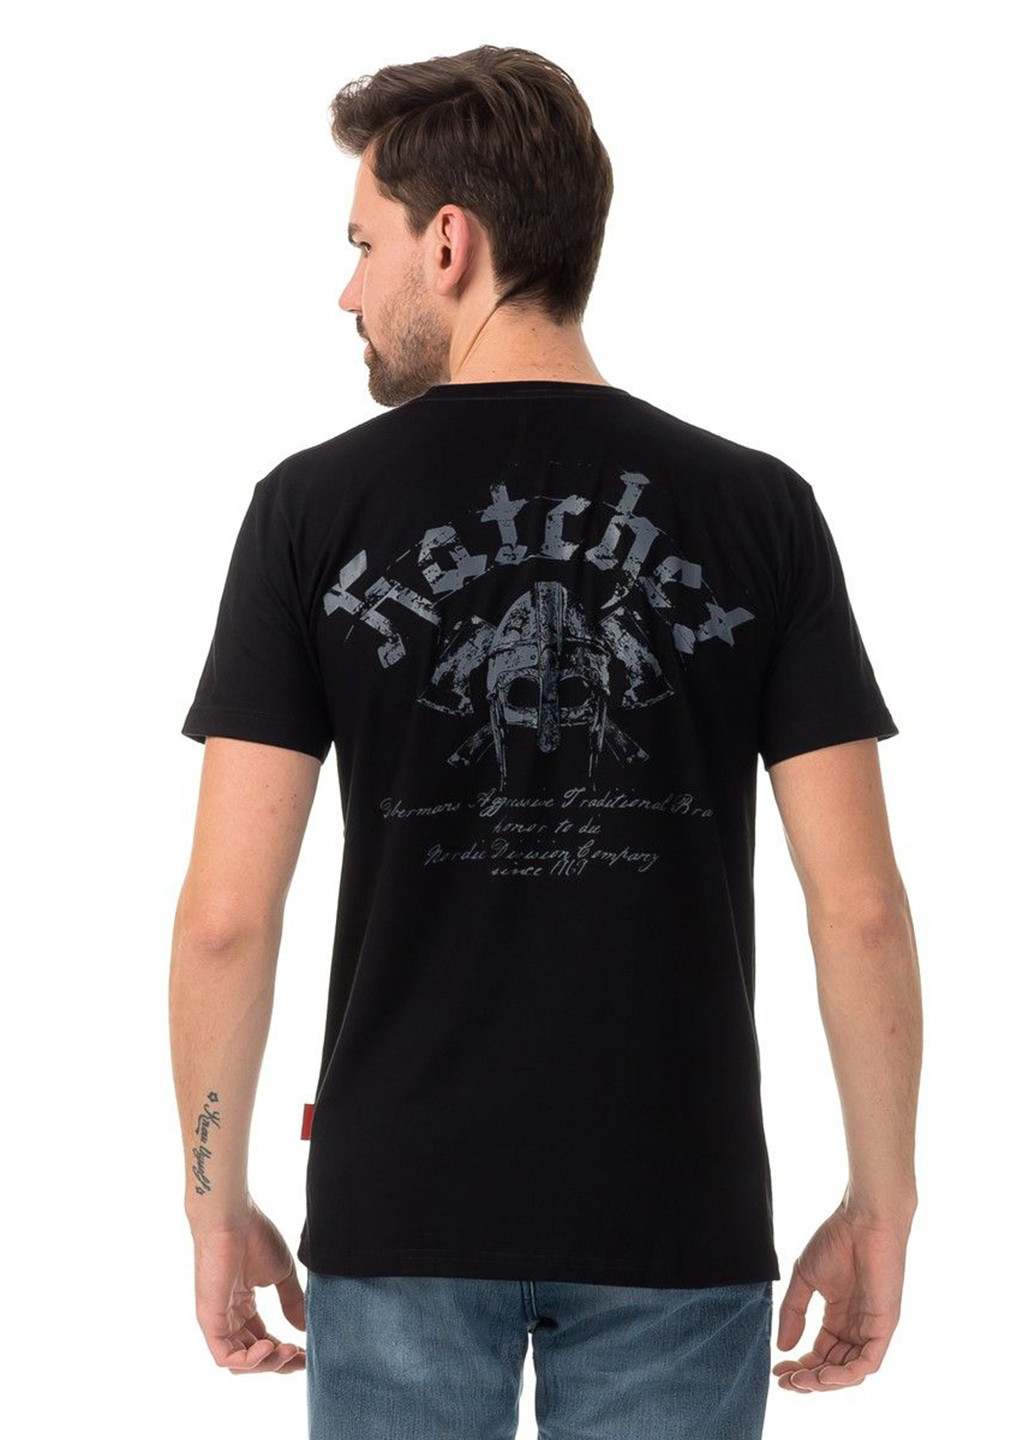 Чорна футболка dobermans hatchet ts40bk Dobermans Aggressive